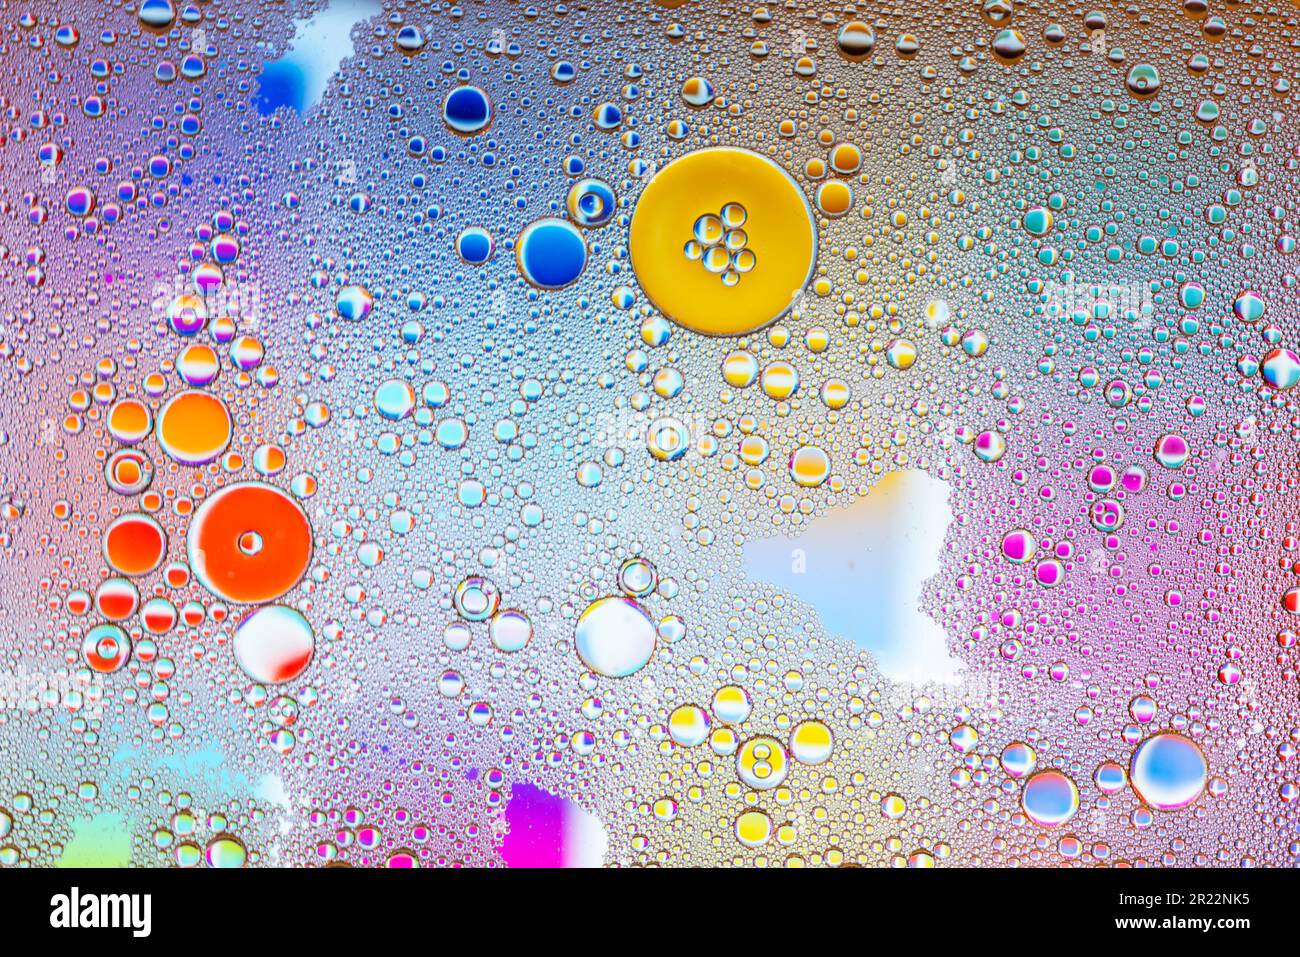 Detalle de burbujas y gotas de agua de varios colores Stock Photo